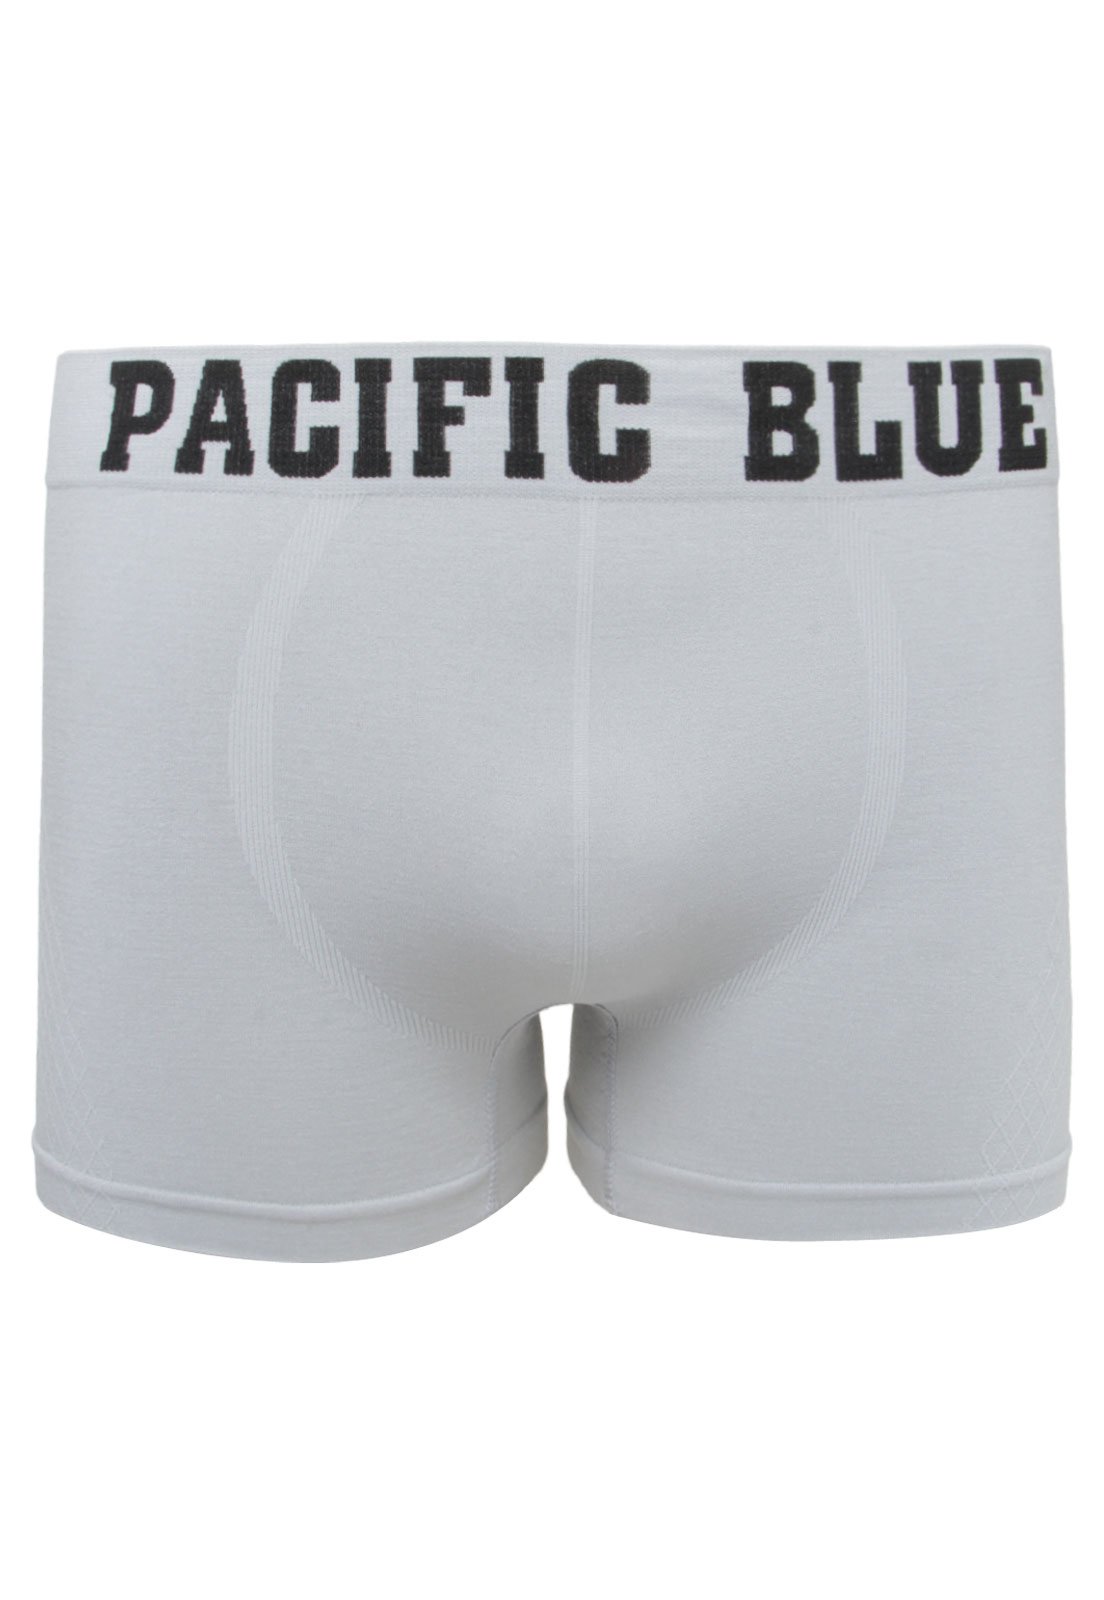 Pacific Blue Boxer Briefs